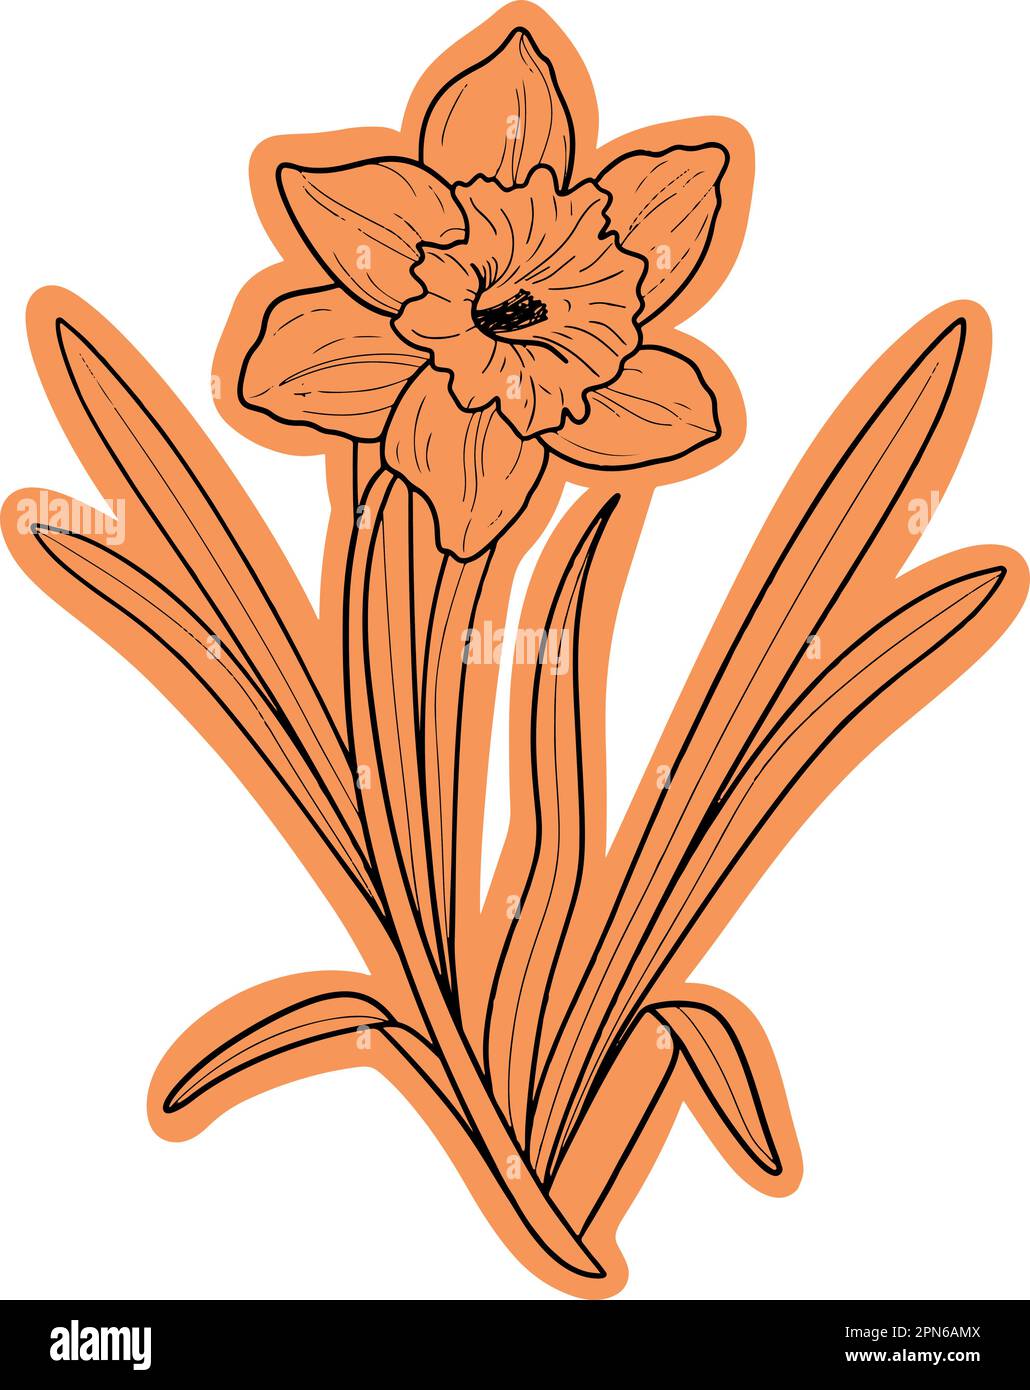 Icône représentant un vecteur floral orange narcissus. Il s'agit d'une illustration polyvalente conçue pour diverses utilisations. Utilisable pour les autocollants, les cartes, les mugs ou les sacs. Illustration de Vecteur